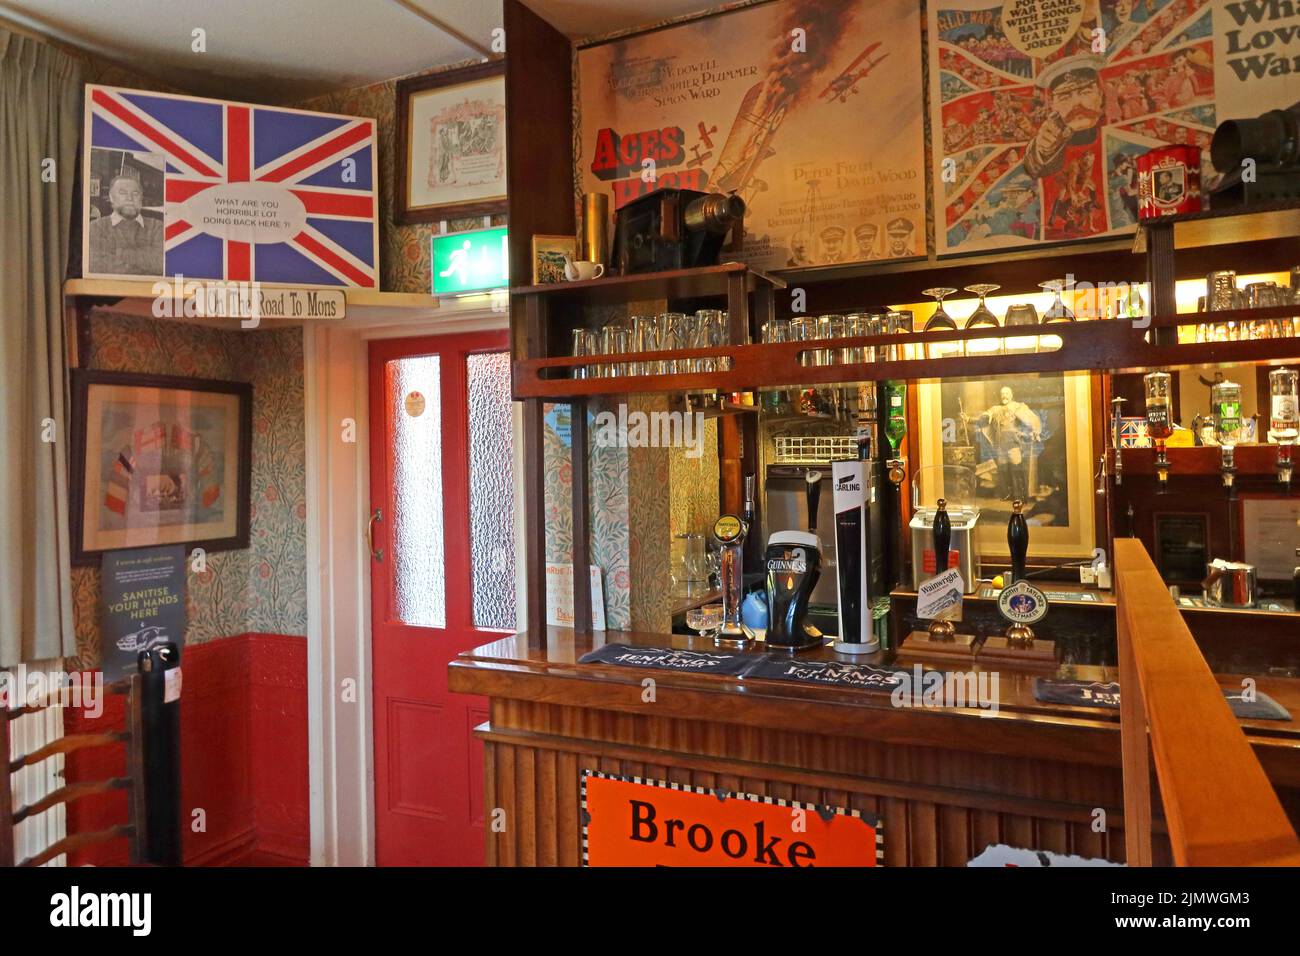 Intérieur de l'Albion Real ALE pub, Park Street, Chester, Cheshire, Angleterre, Royaume-Uni, CH1 1RQ - Aces High, quelle belle affiche de guerre Banque D'Images